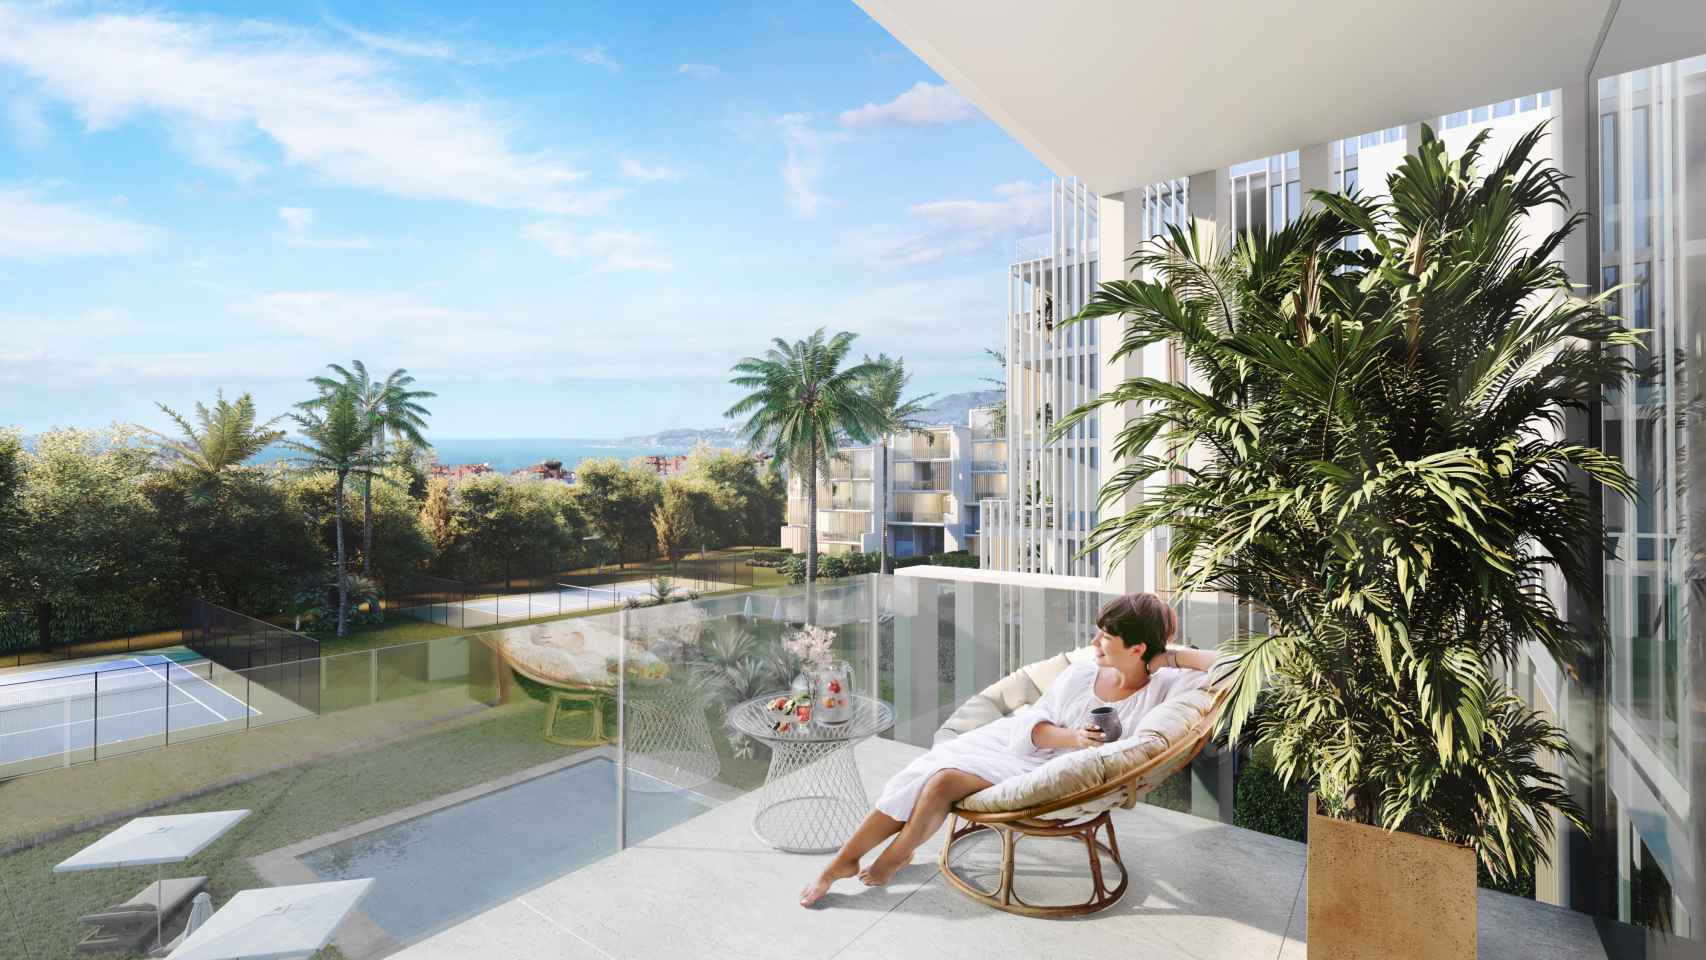 Imágenes de la futura transformación del hotel Los Álamos en el mayor coliving' de Málaga.